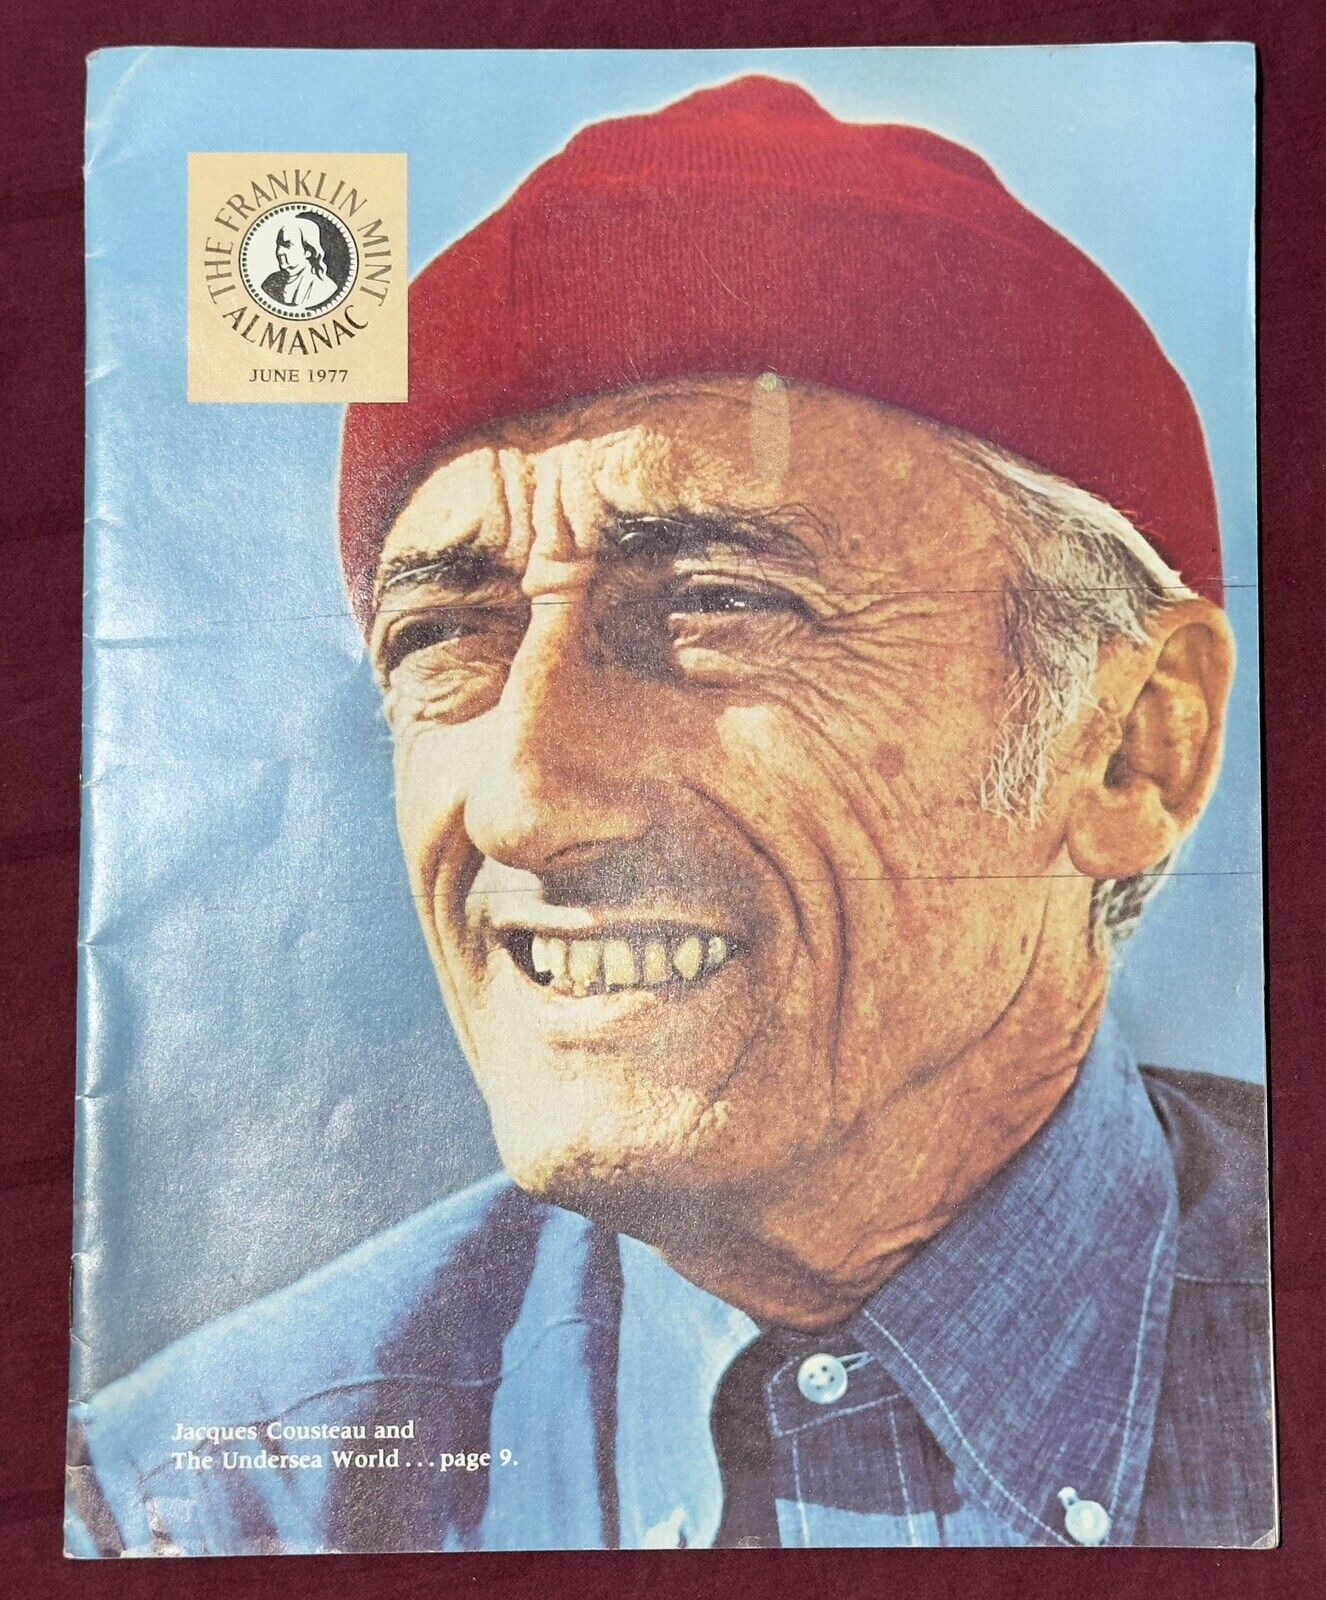 Jacques Cousteau The Franklin Mint Almanac Magazine June 1977